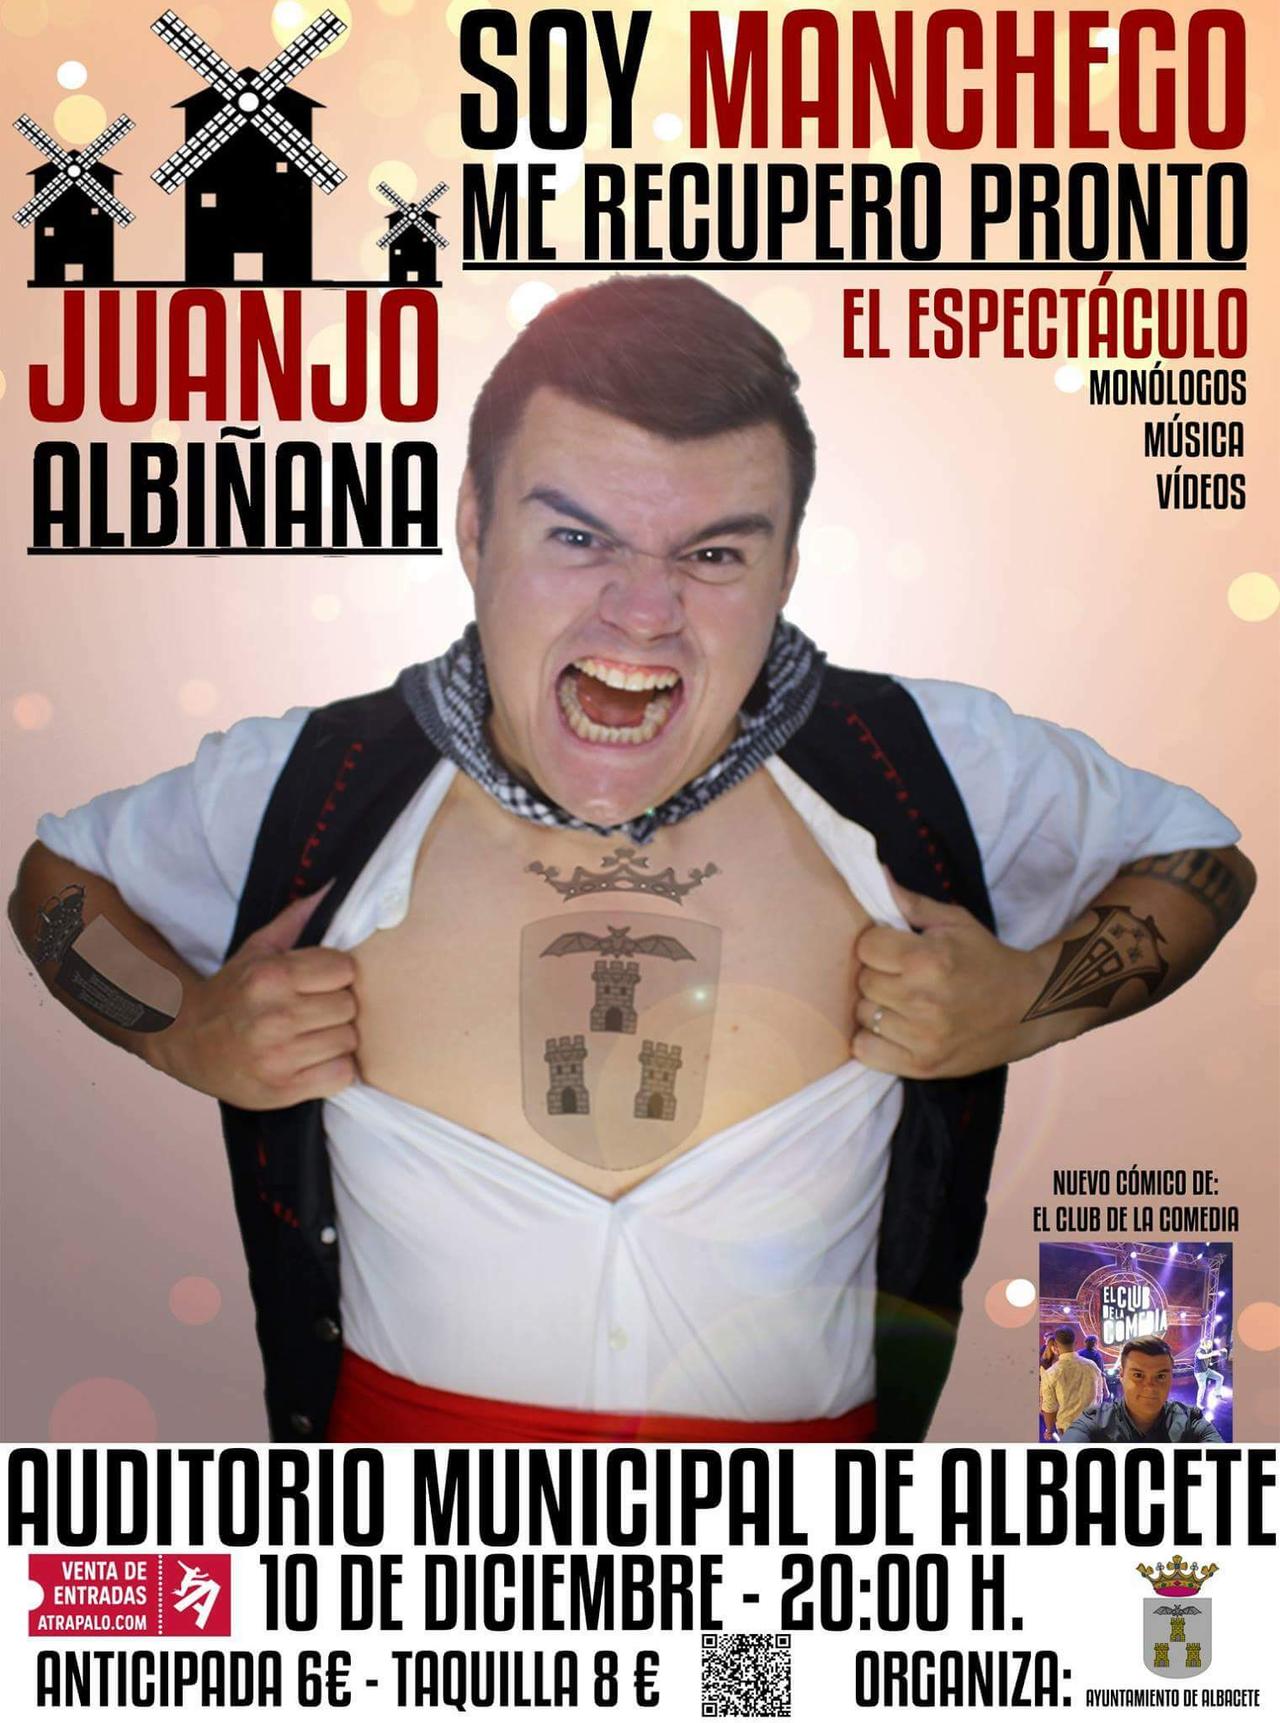 Soy Manchego, me recupero pronto - Juanjo Albiñana